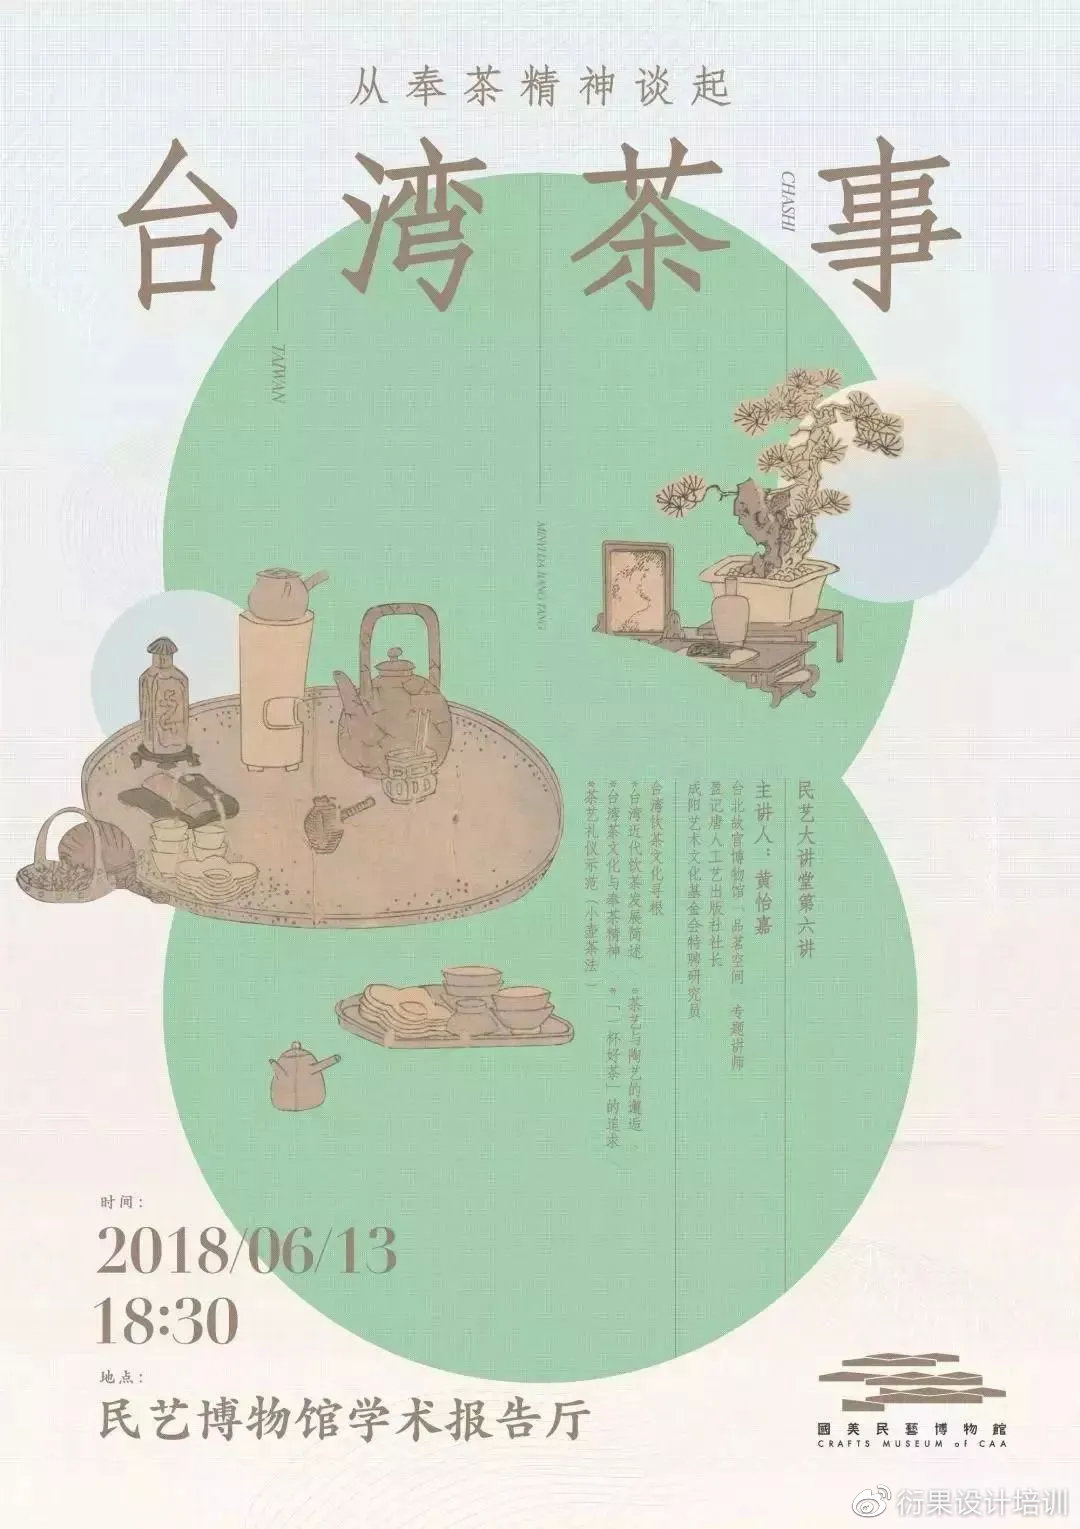 【平面设计】中文类型插画海报设计方式